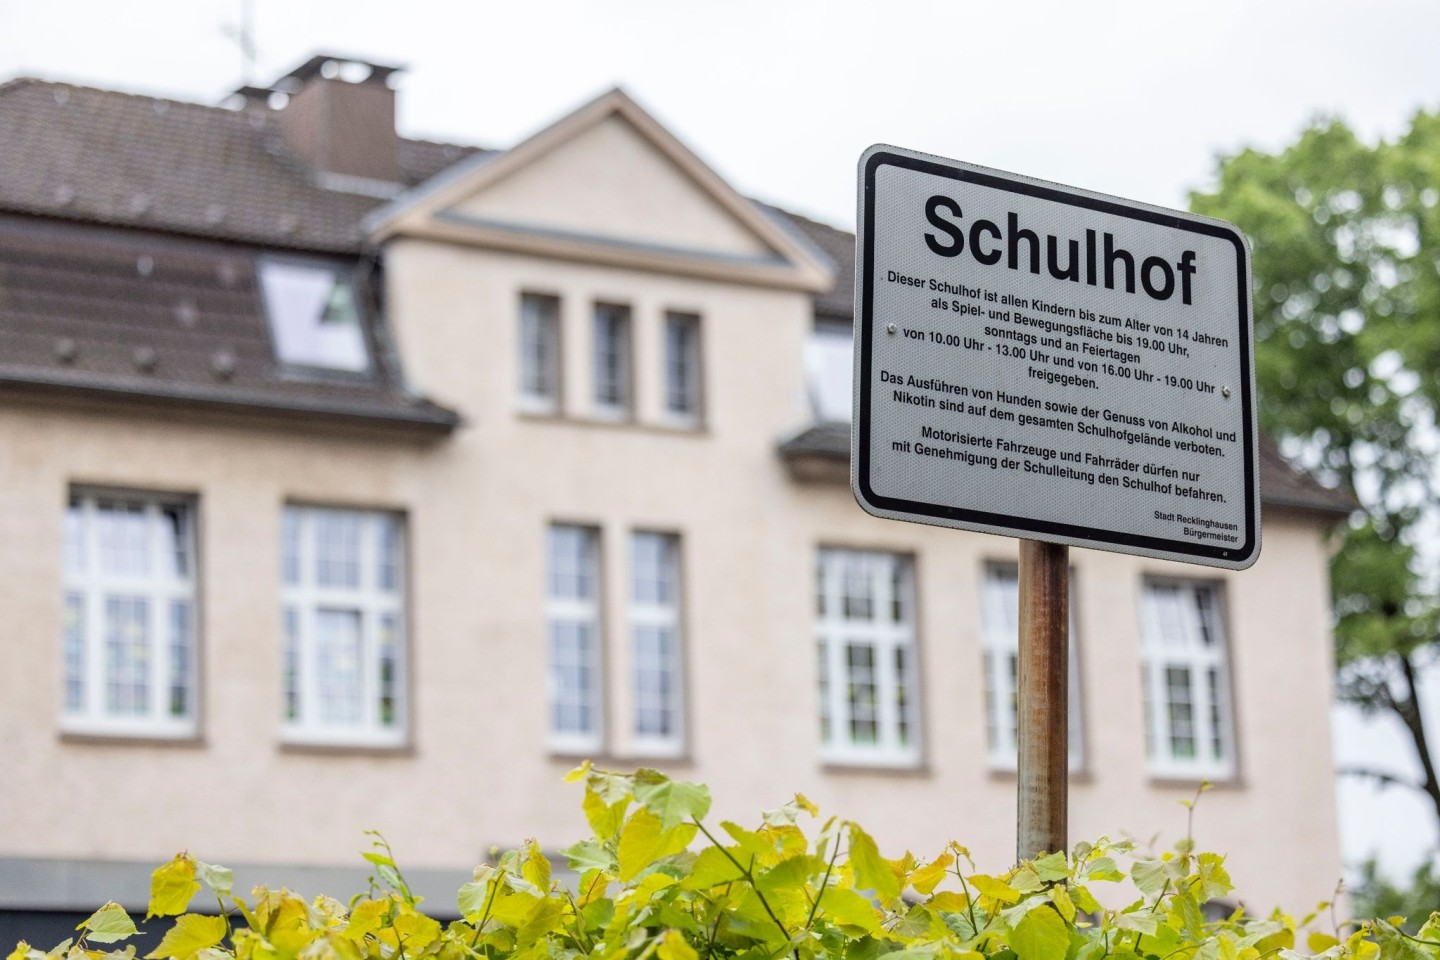 Grundschüler aus Recklinghausen entdeckten die Leiche des Opfers auf ihrem Schulhof. Nun steht der mutmaßliche Täter vor Gericht.